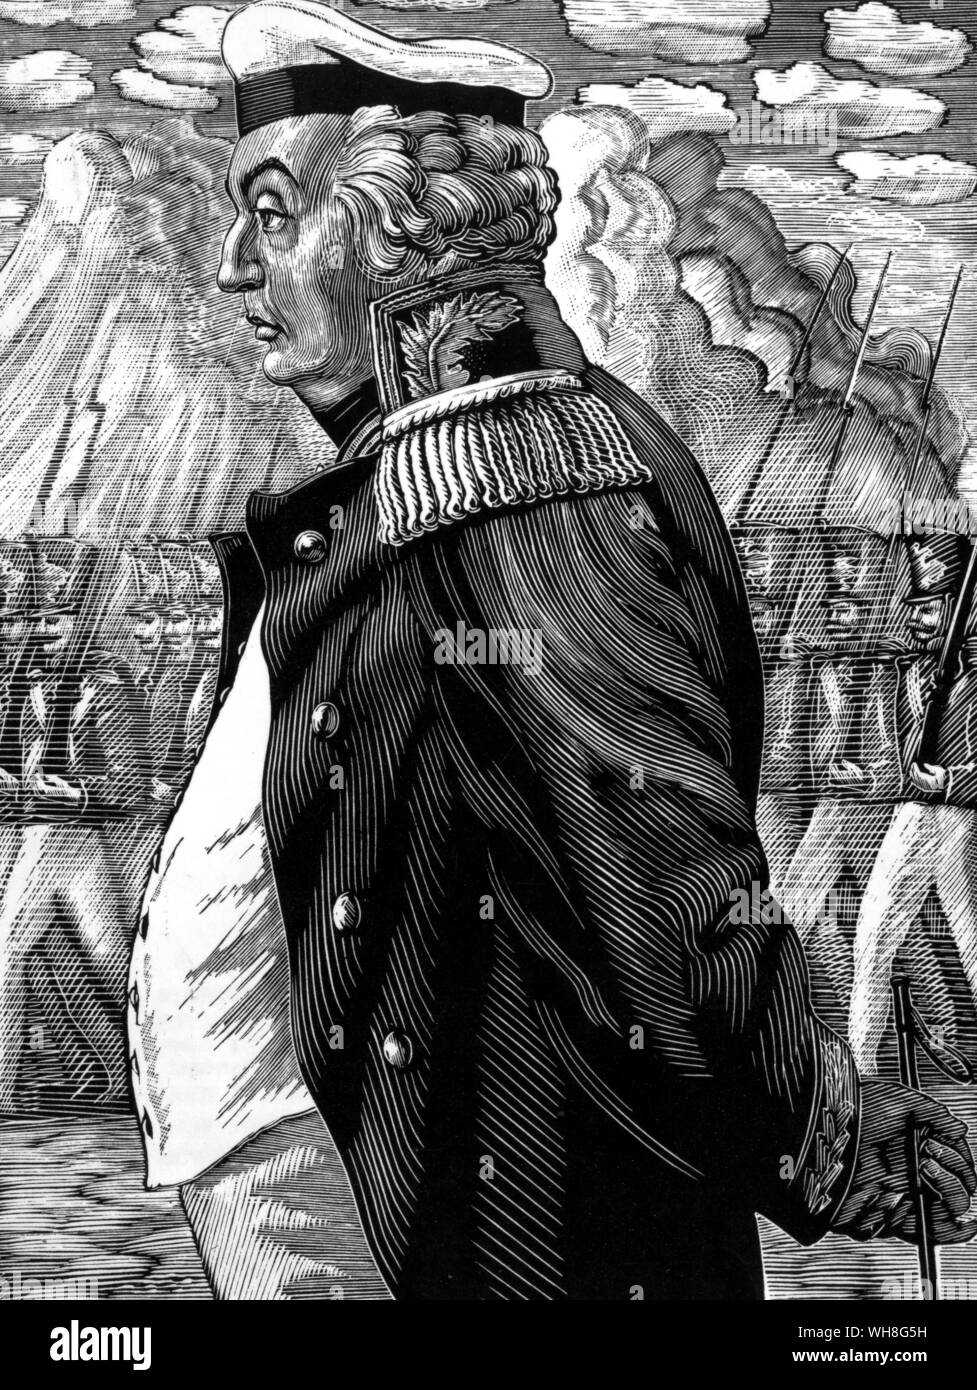 Allgemeine Kutuzov (1745-1813) lehnte es ab, den Feind zu engagieren und Alexander war ich sehr irritiert. Prinz Michail Illarionovich Golenishchev-Kutuzov war die russische Feldmarschall gutgeschrieben sein Land speichern von Napoleons Invasion.. . . . . . Stockfoto